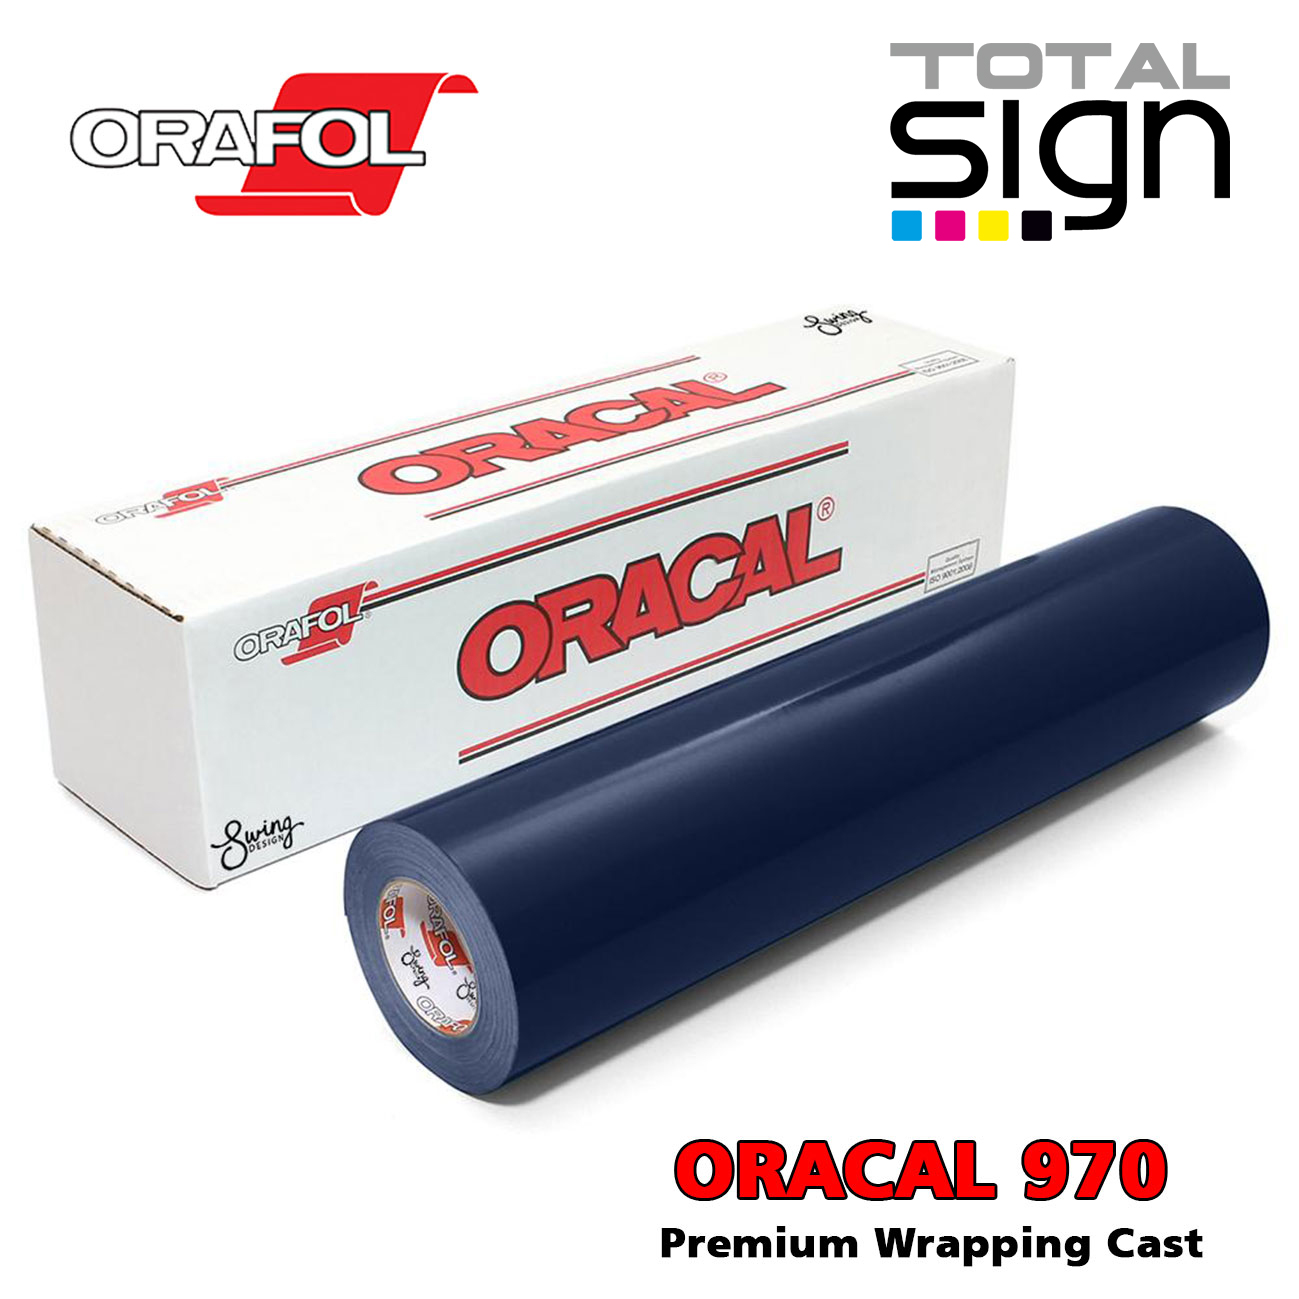 Oracal 970 Premium Wrapping Cast, Vollverklebungsfolien